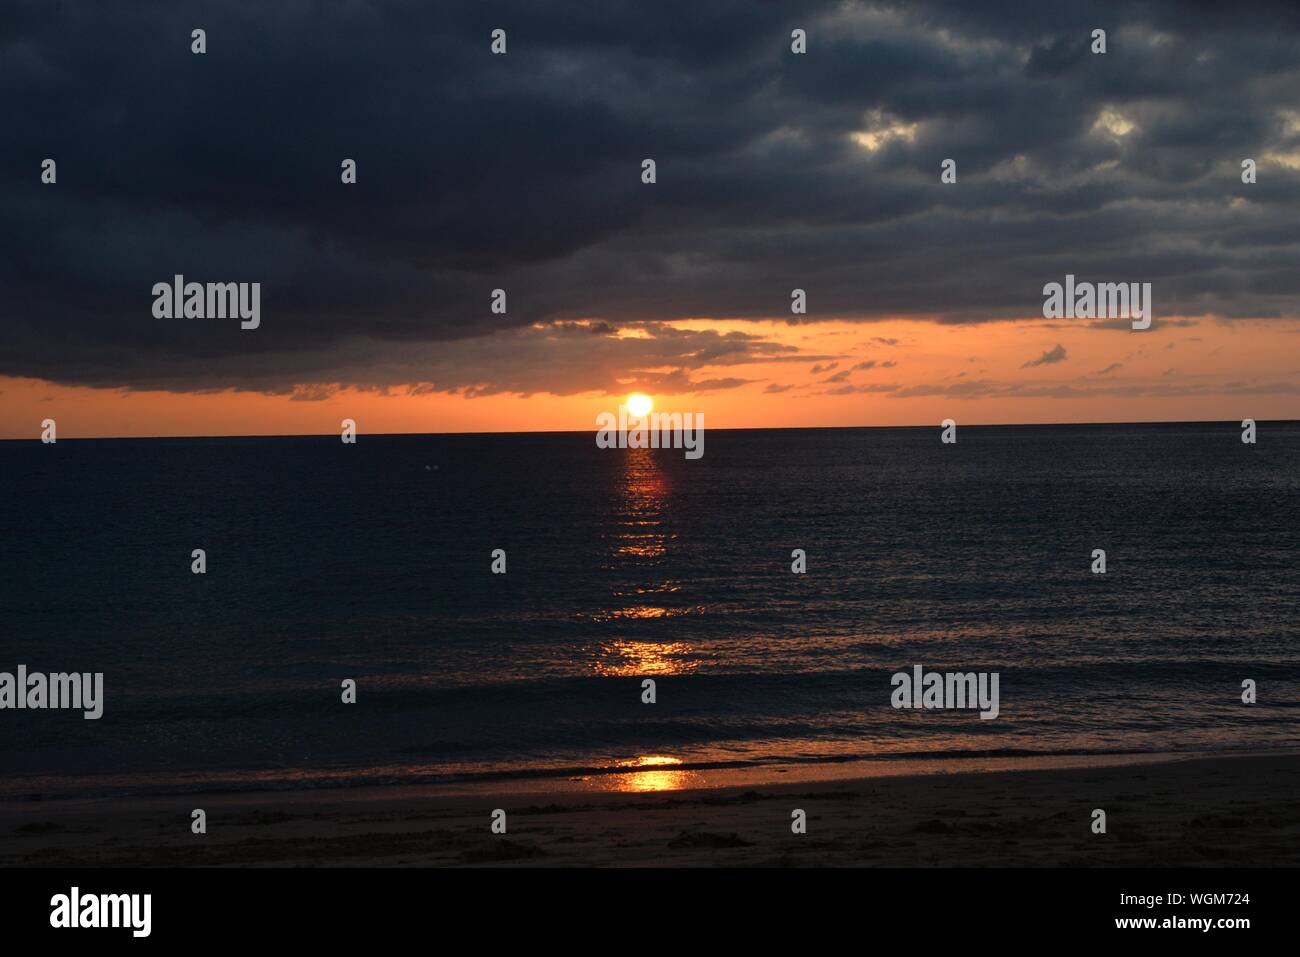 Vue panoramique sur mer contre ciel dramatique pendant le coucher du soleil Banque D'Images